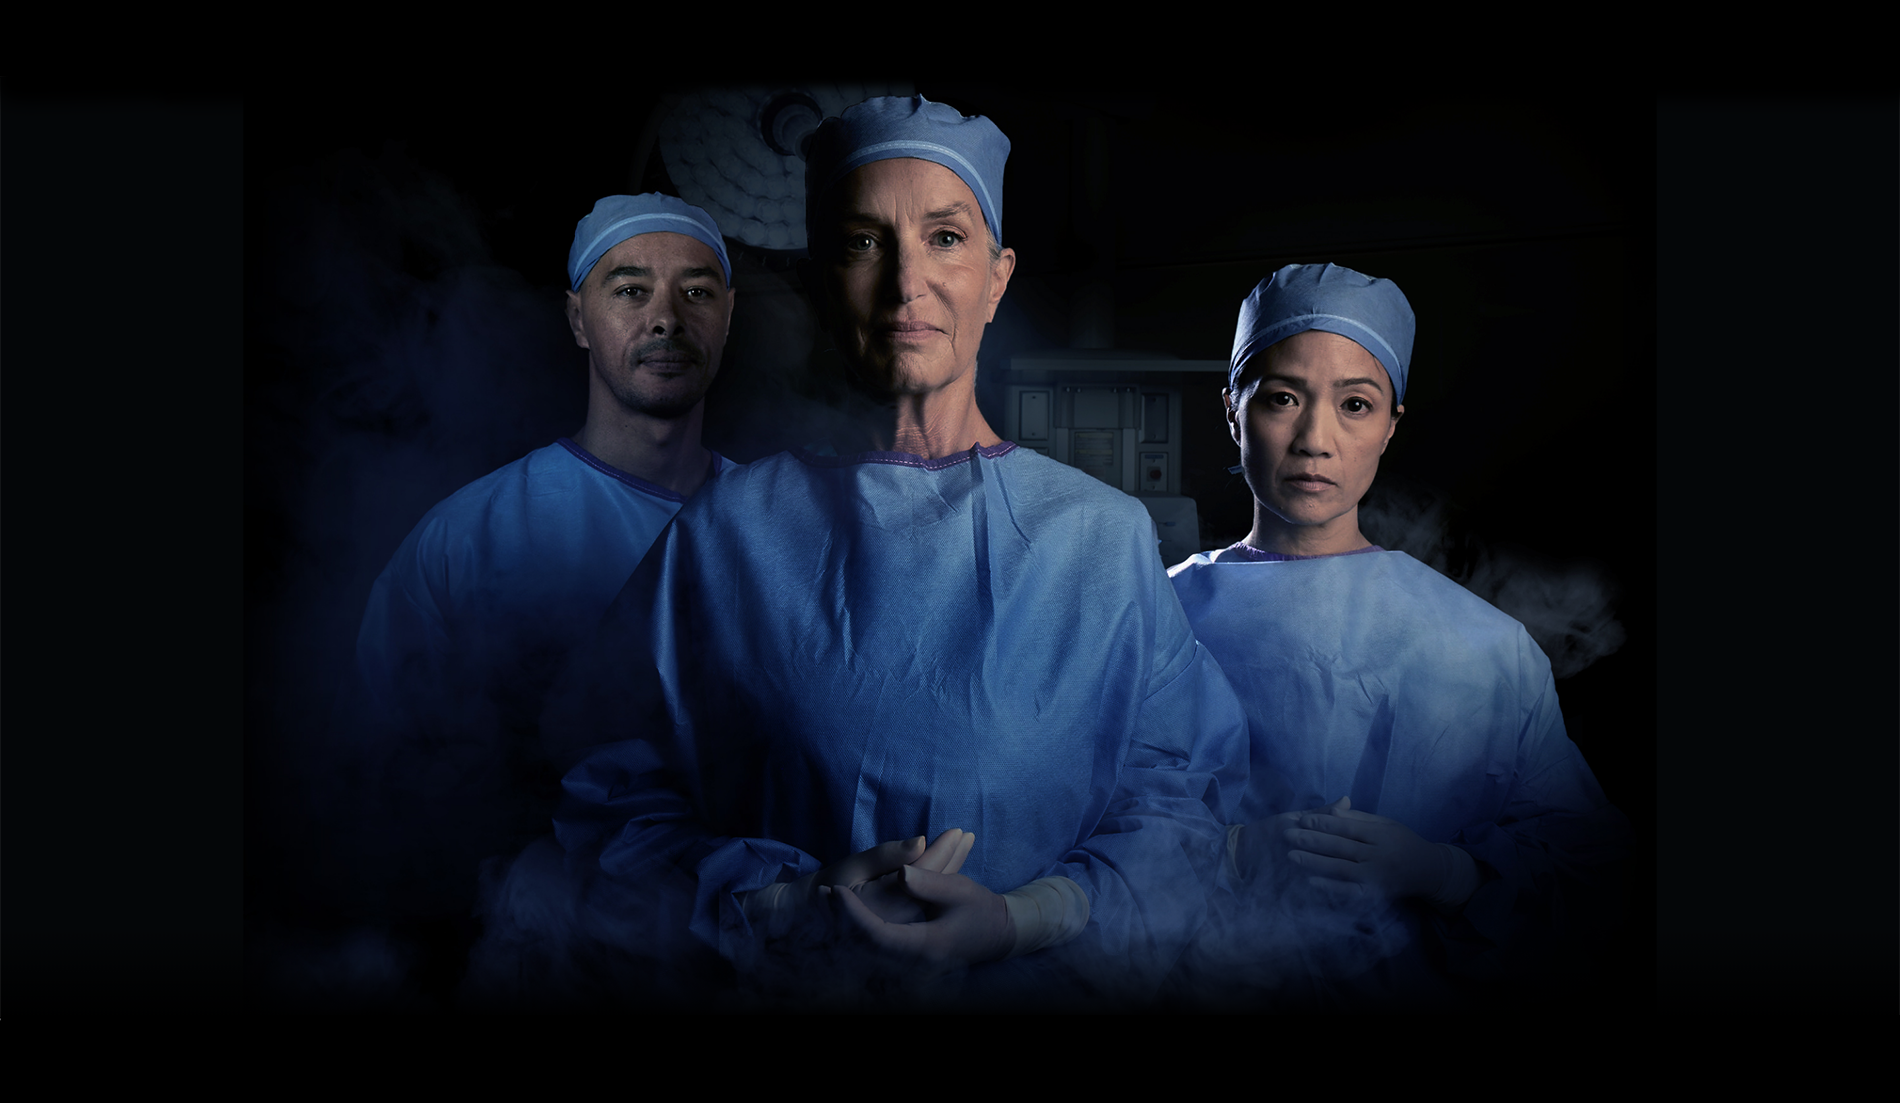 Imagen de personal quirúrgico en un quirófano lleno de humo